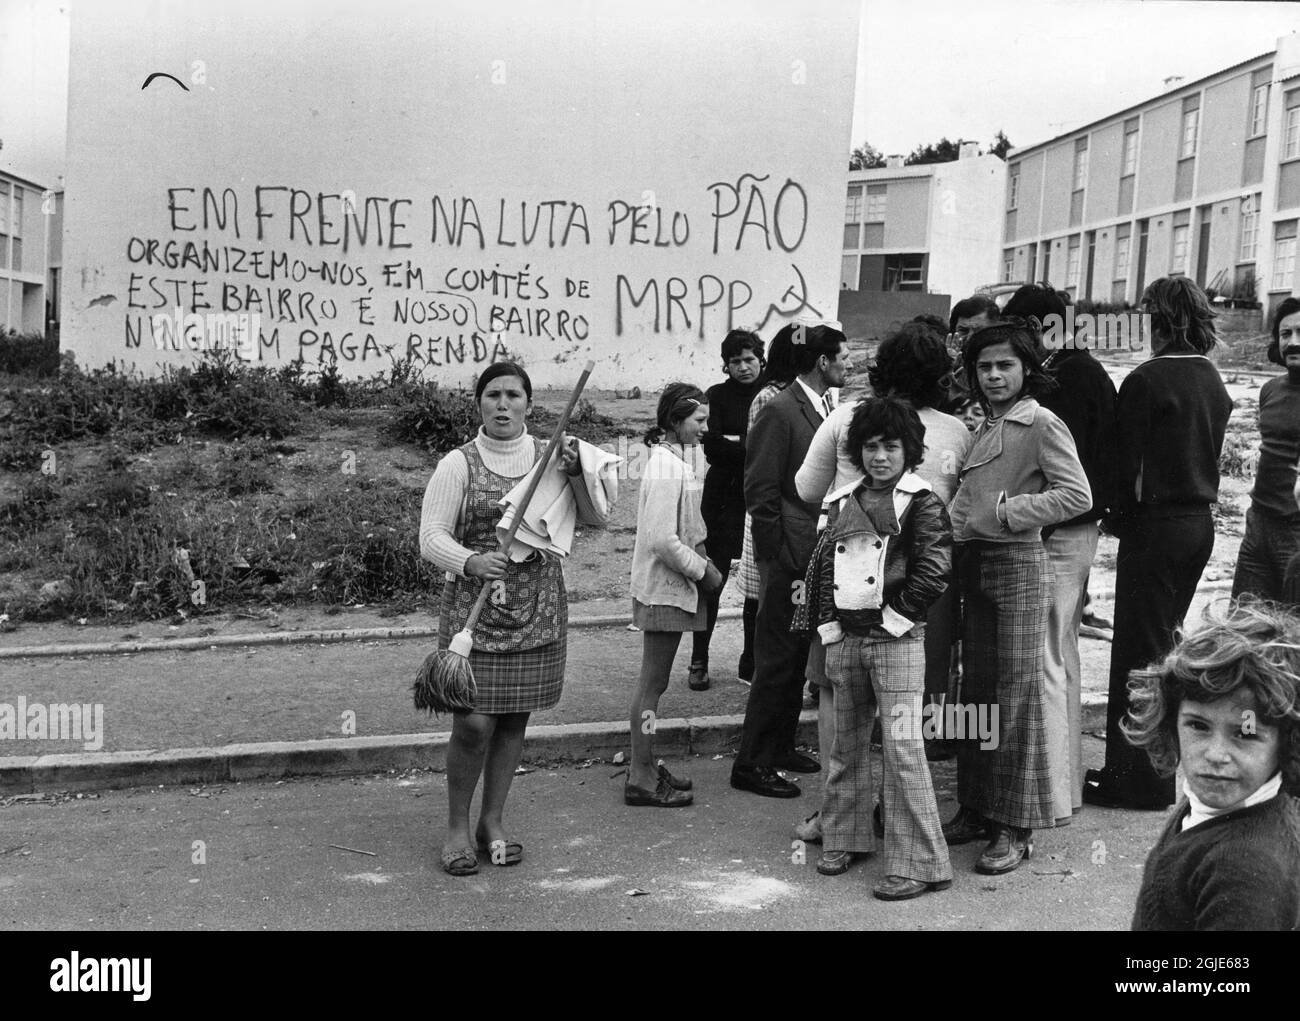 Dopo il colpo di stato militare socialista, la cosiddetta rivoluzione del garofano in Portuga. Sul muro dietro gli occupanti qualcuno ha scritto “in prima linea nella lotta per il pane, formiamo commissioni di MRPP. Questo quartiere è il nostro. Nessuno paga l'affitto ". La fede nei comunisti e nel generale Spinola è incutante. Lisbona, Portogallo, 05 maggio 1974. Foto: Sven-Erik Sjoberg / DN / TT / Codice: 53 Foto Stock